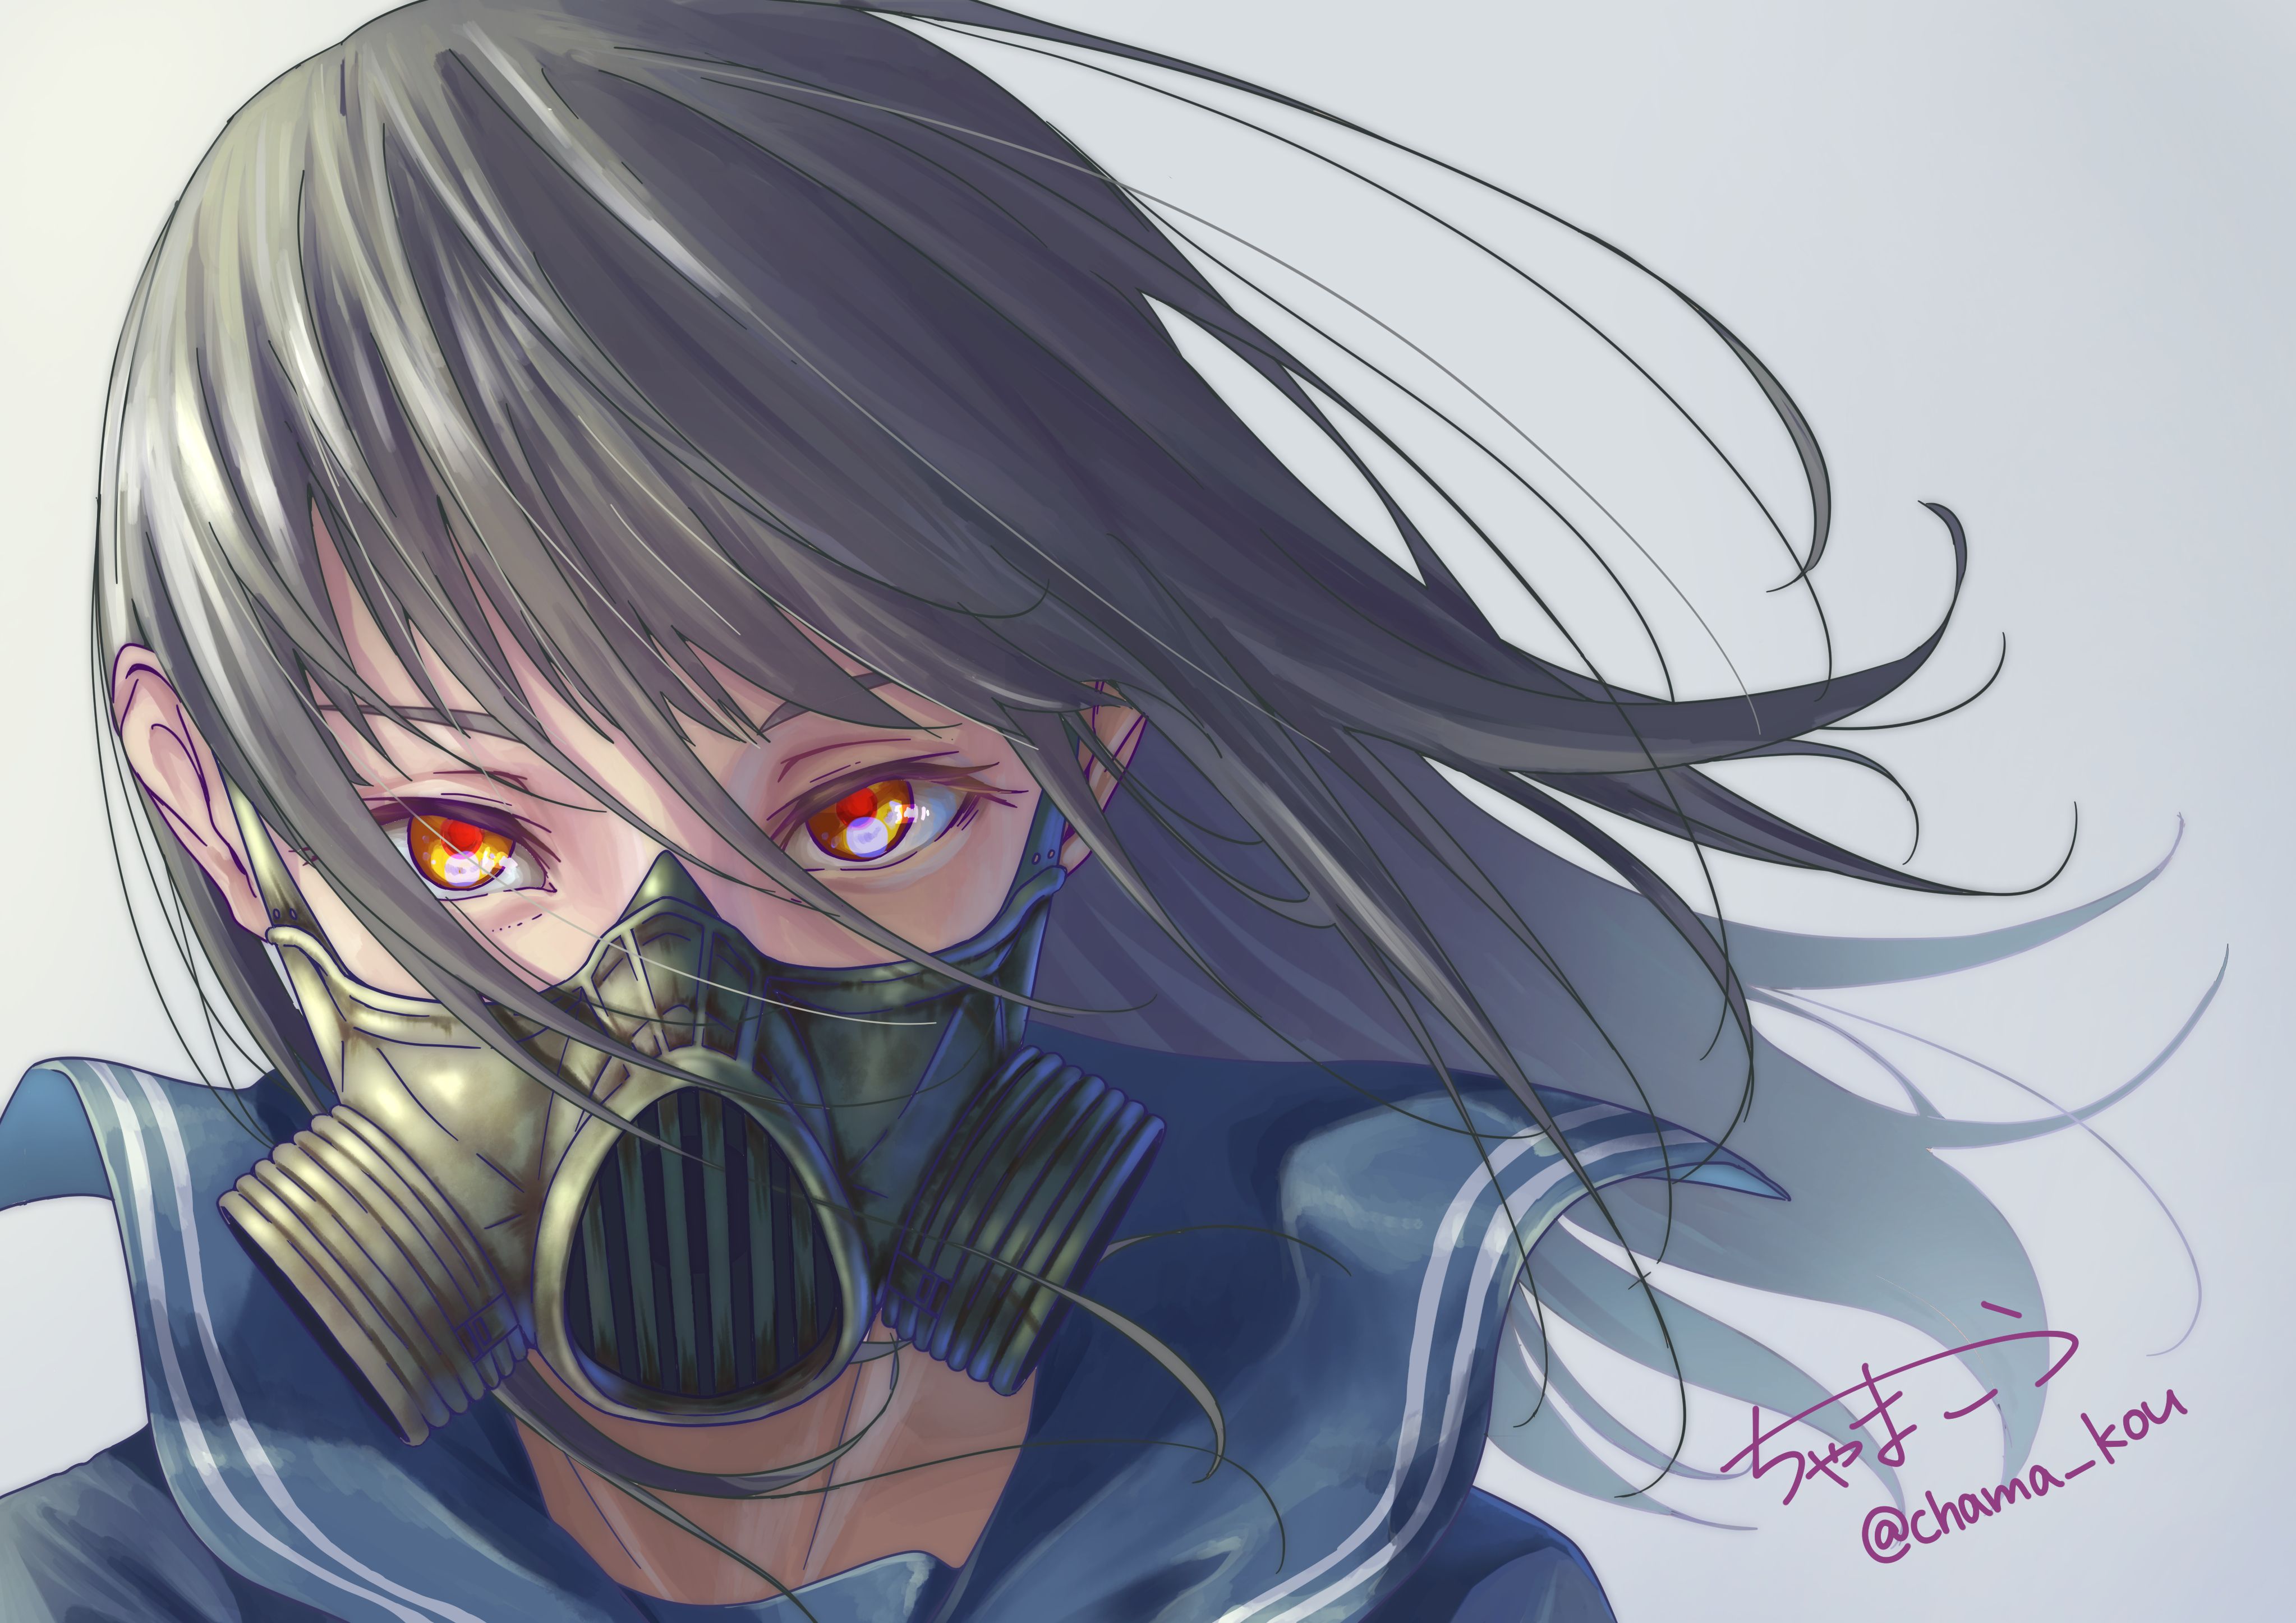 Anime Original Girl With Mask, HD Anime, 4k Wallpaper, Image